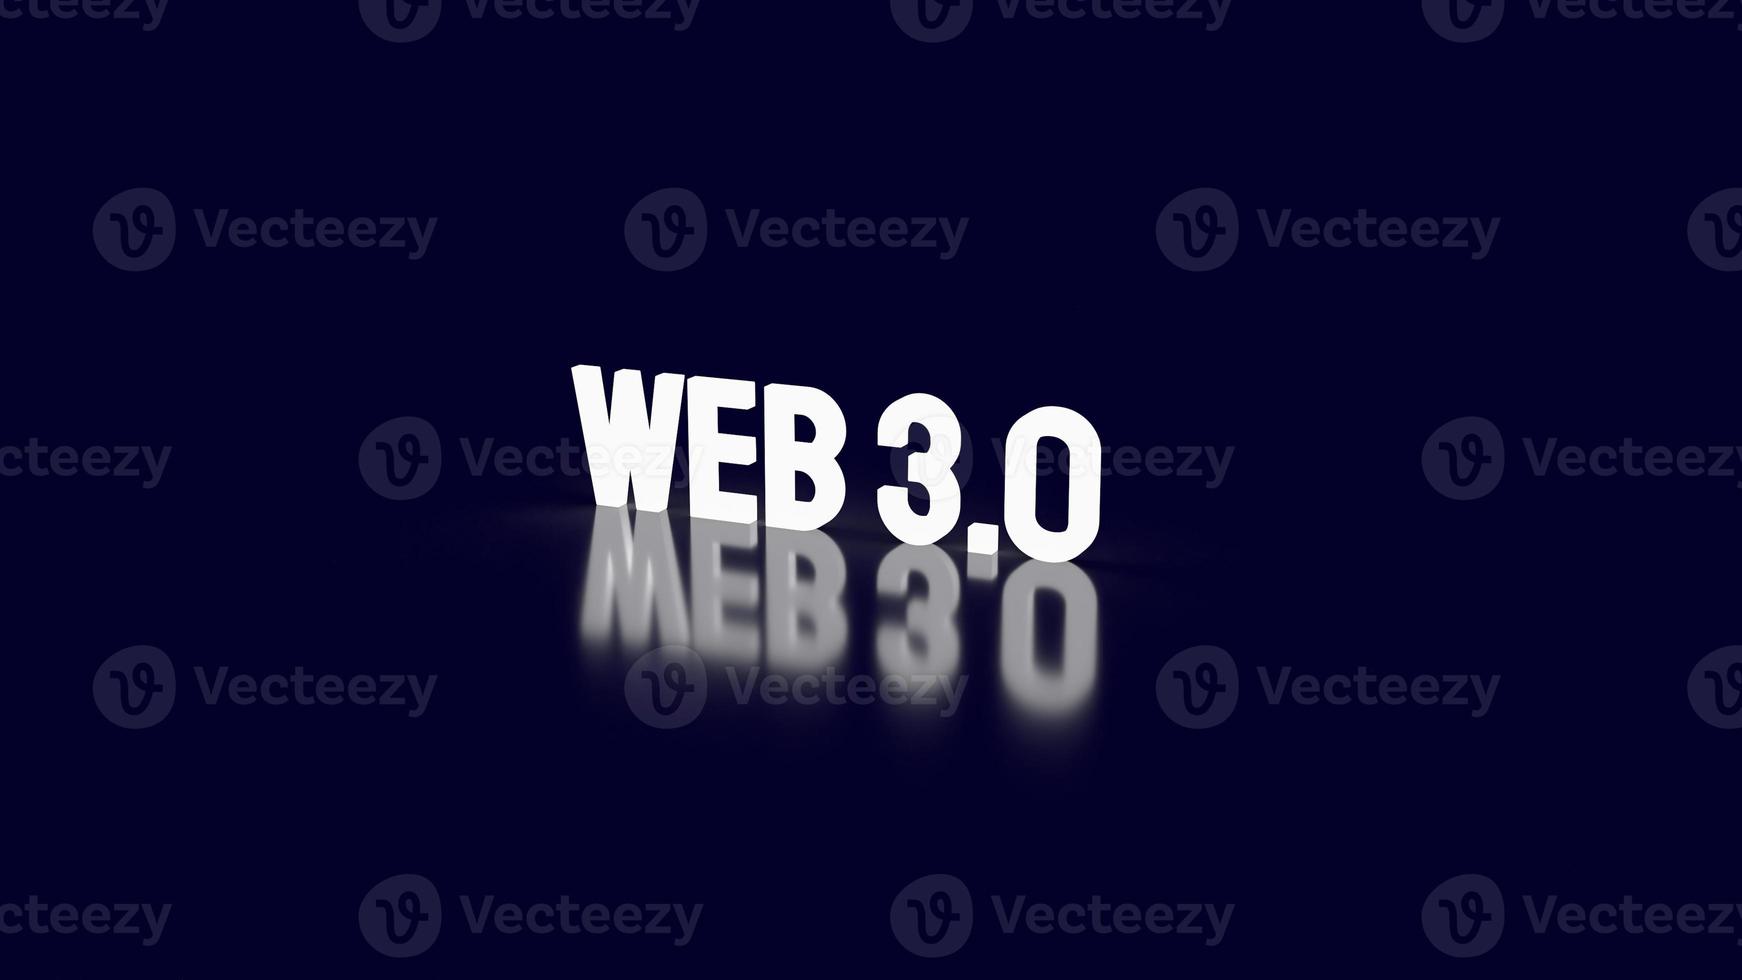 der web 3.0-text für das technologiekonzept 3d-rendering foto